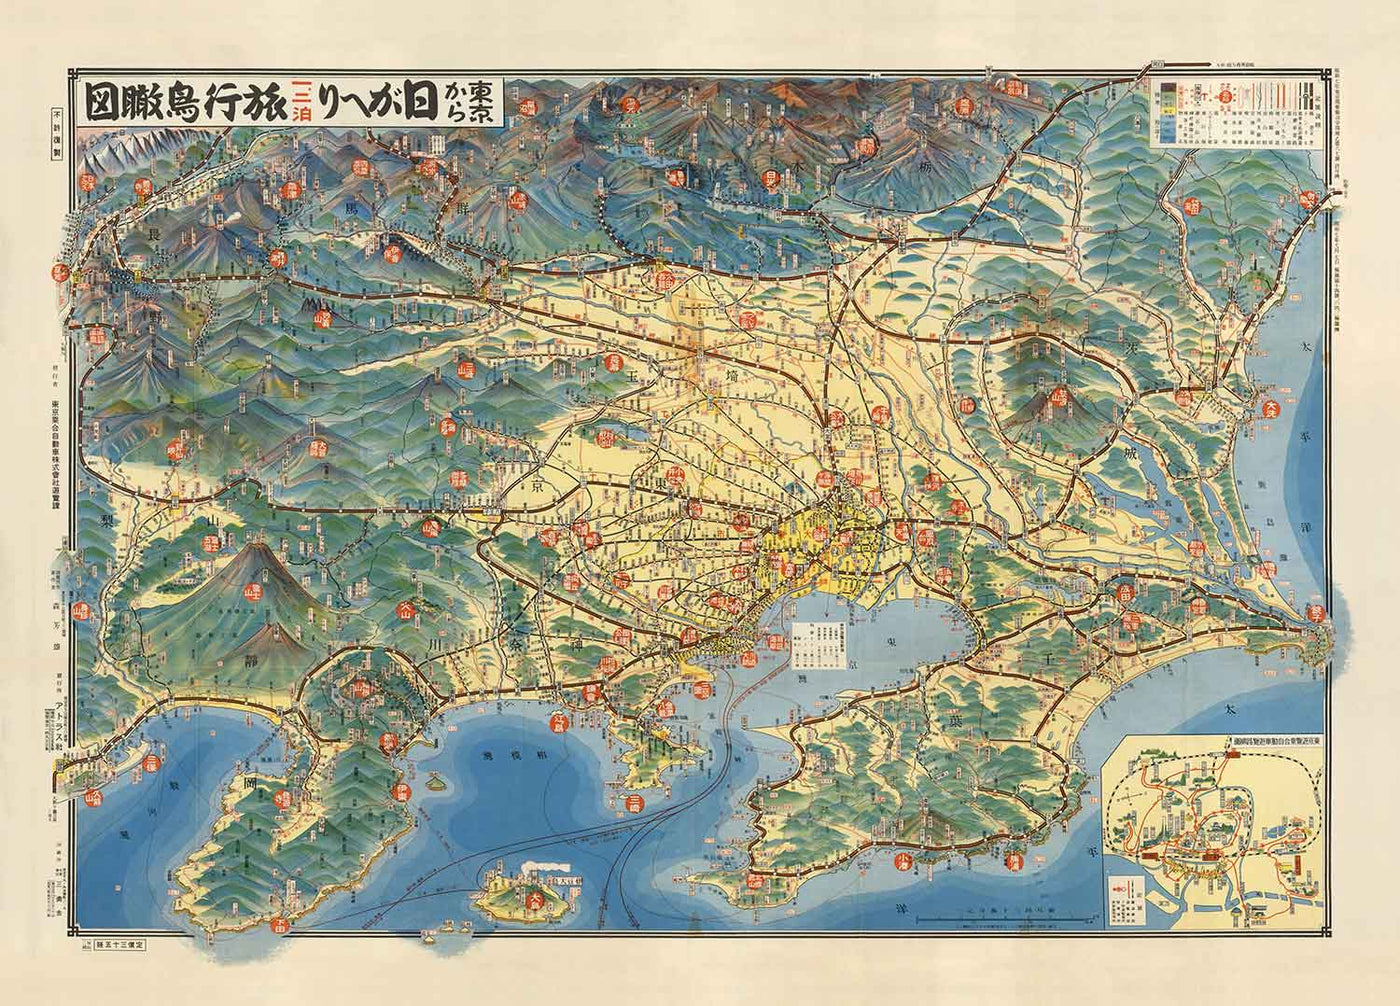 Ancien plan pictural de Tokyo en 1932 par Noriai Jidosha Co - Chuo, Shinjuku, Koto, Meguro, Taito